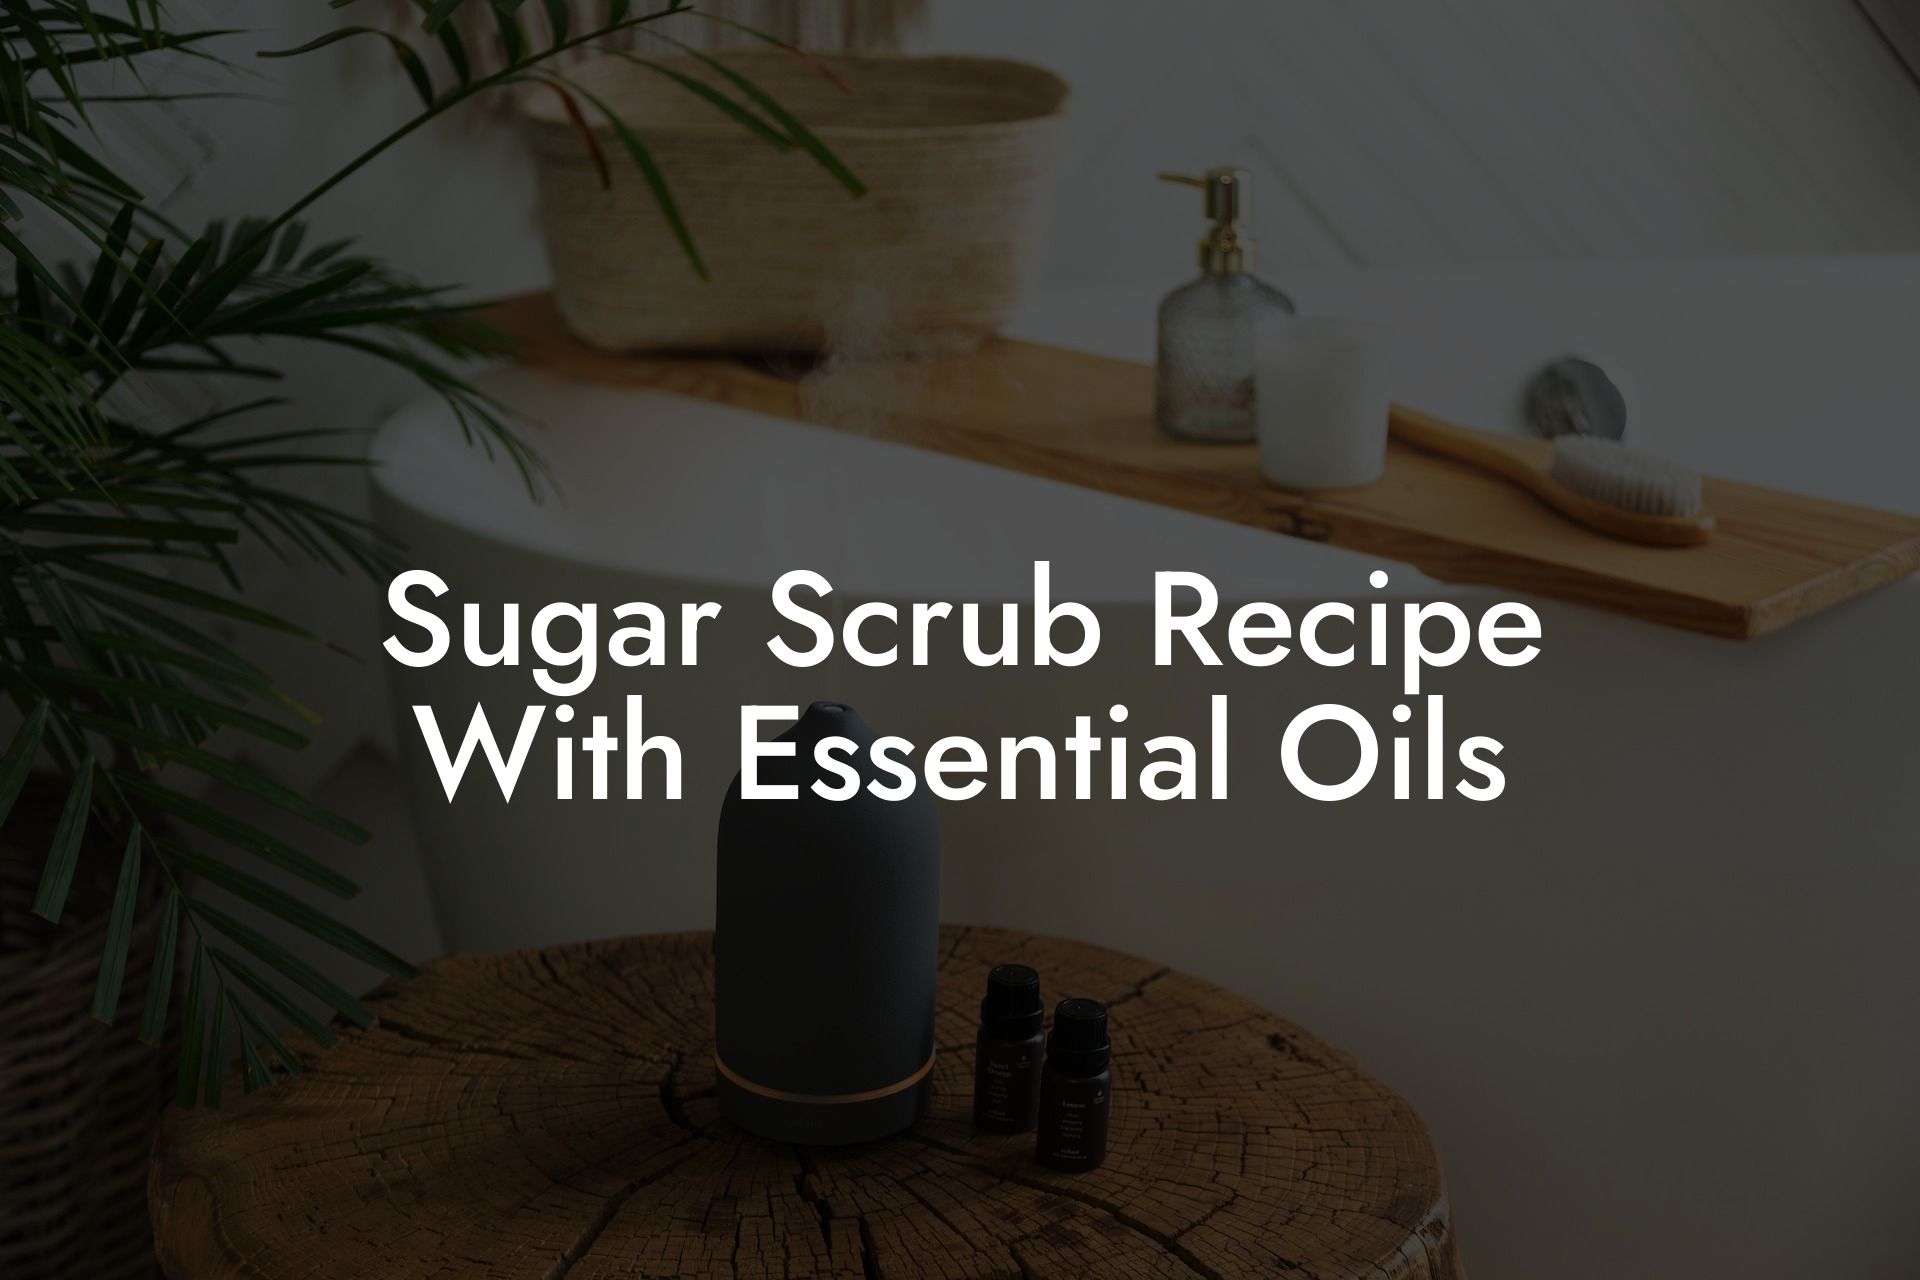 Sugar Scrub Recipe With Essential Oils